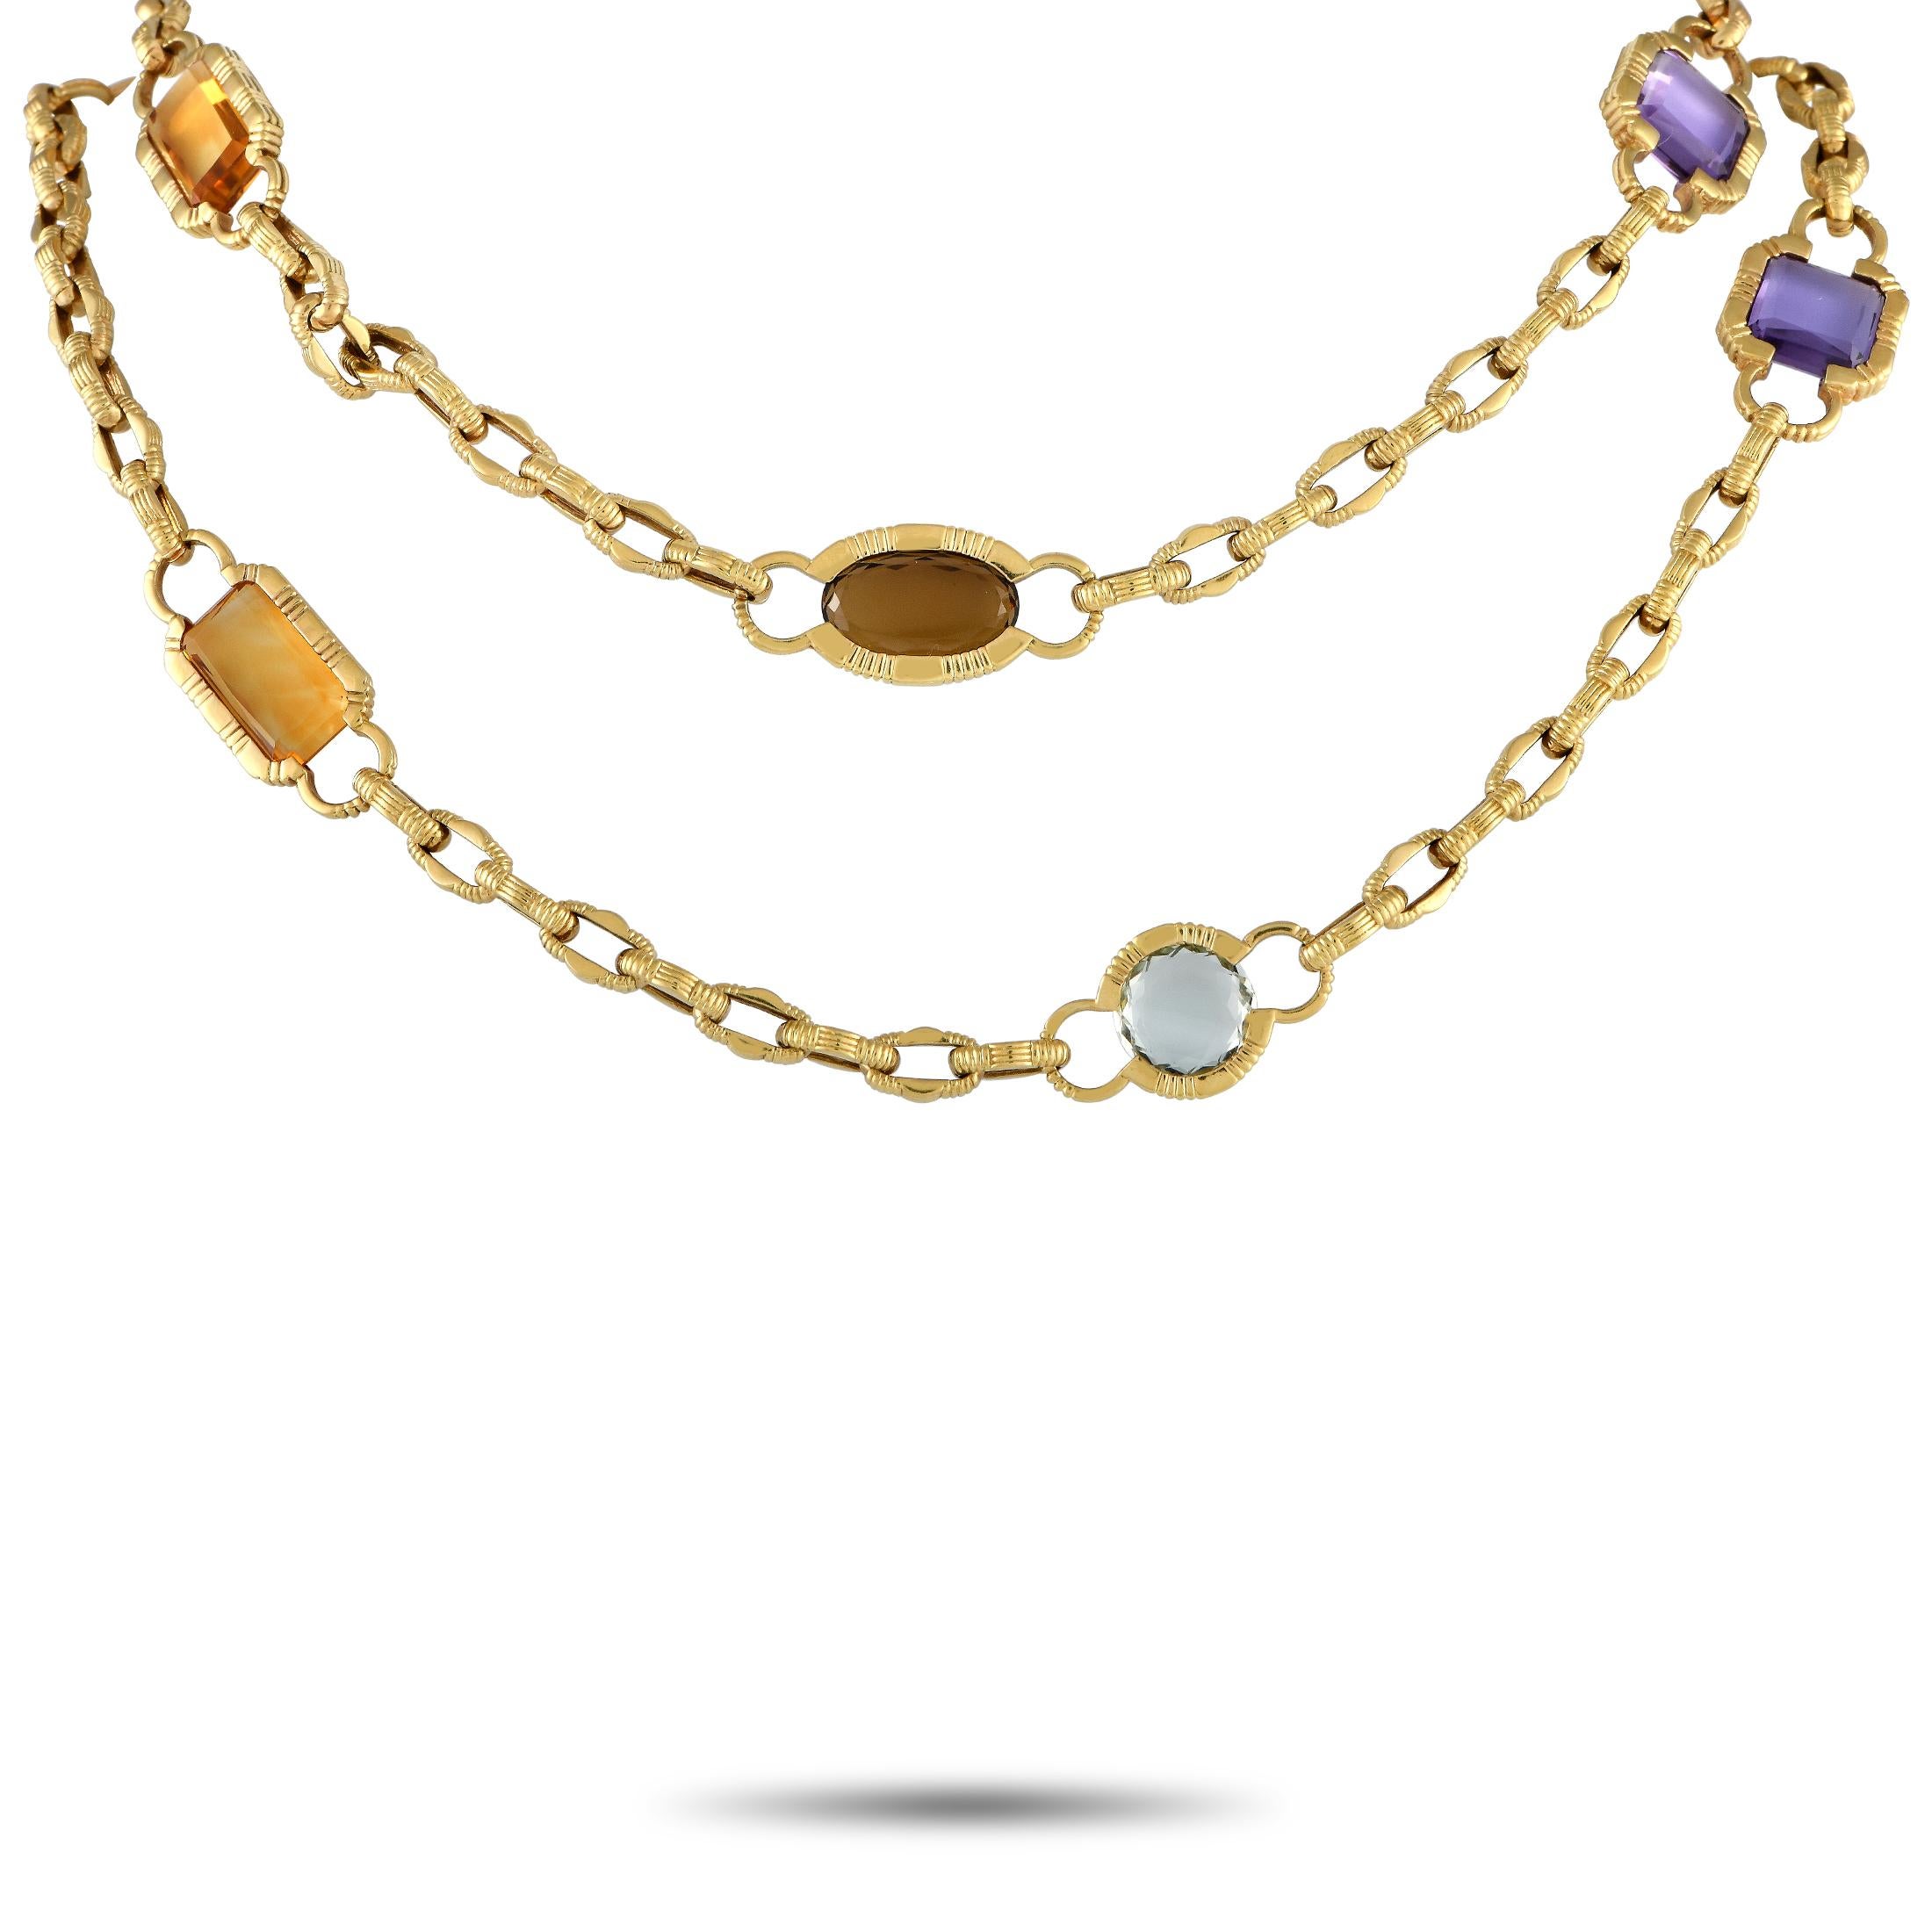 Diese lange Halskette von Roberto Coin aus 18 Karat Gelbgold verleiht Ihrer Garderobe einen Hauch von skurriler Eleganz. Die Halskette besteht aus einer 31 Zoll langen Kette mit strukturierten Gliedern, die mit Edelsteinstationen durchsetzt sind,